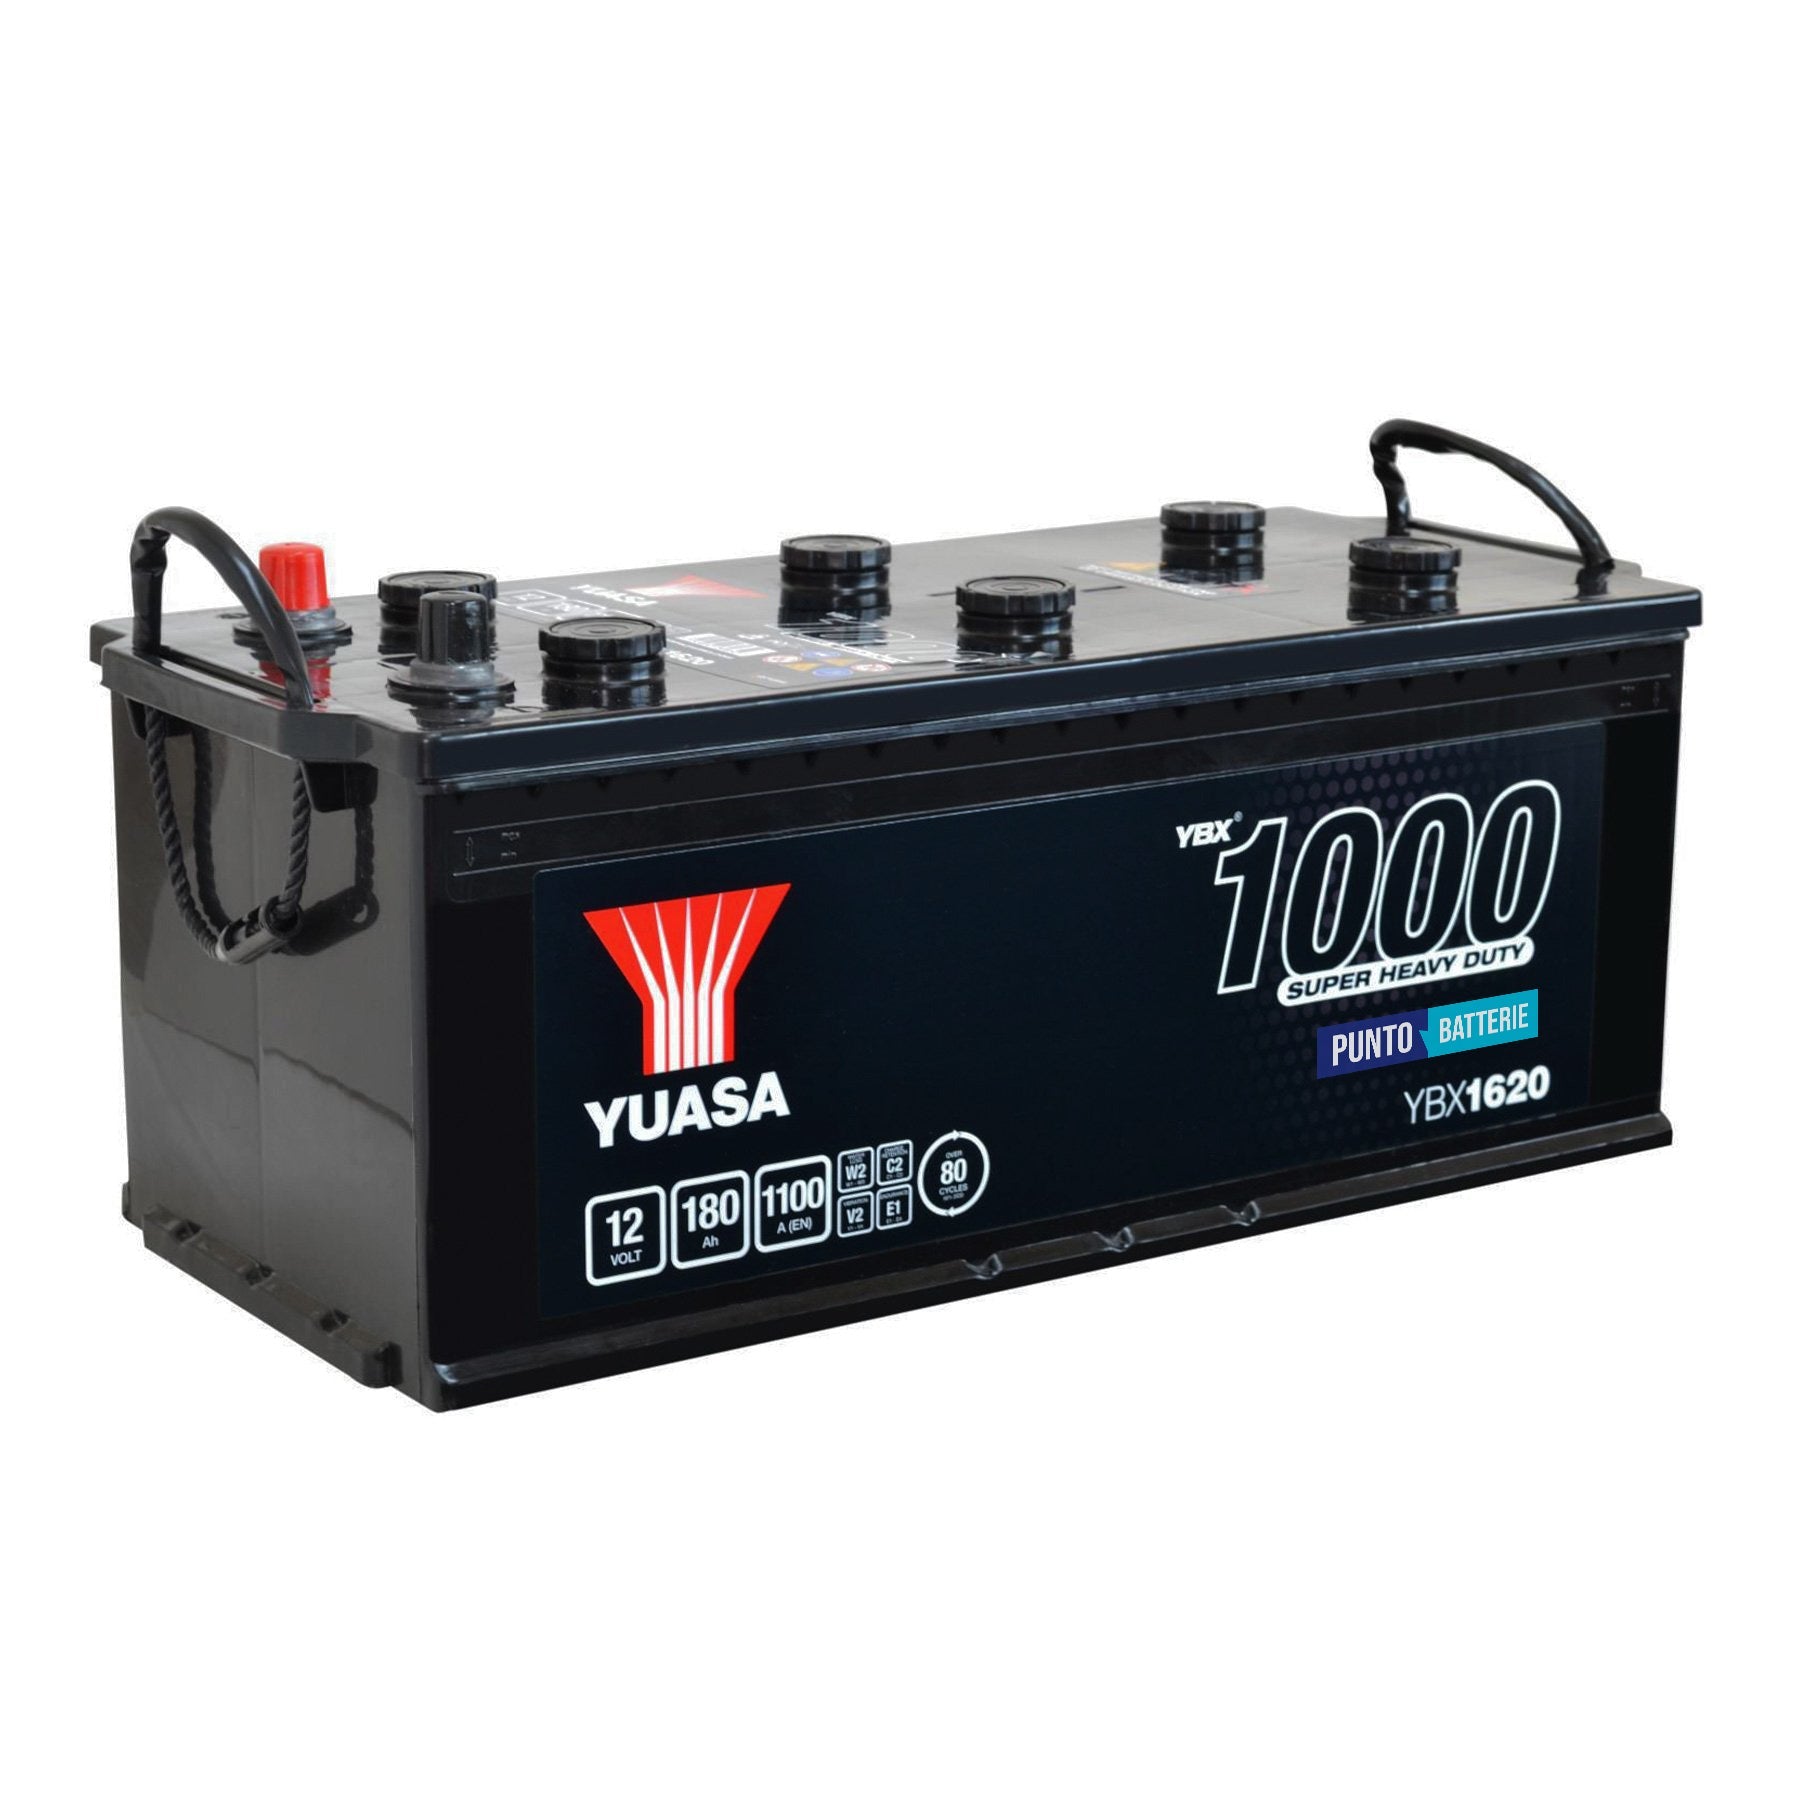 Batteria originale Yuasa YBX1000 YBX1620, dimensioni 513 x 223 x 223, polo positivo a sinistra, 12 volt, 180 amperora, 1100 ampere. Batteria per camion e veicoli pesanti.